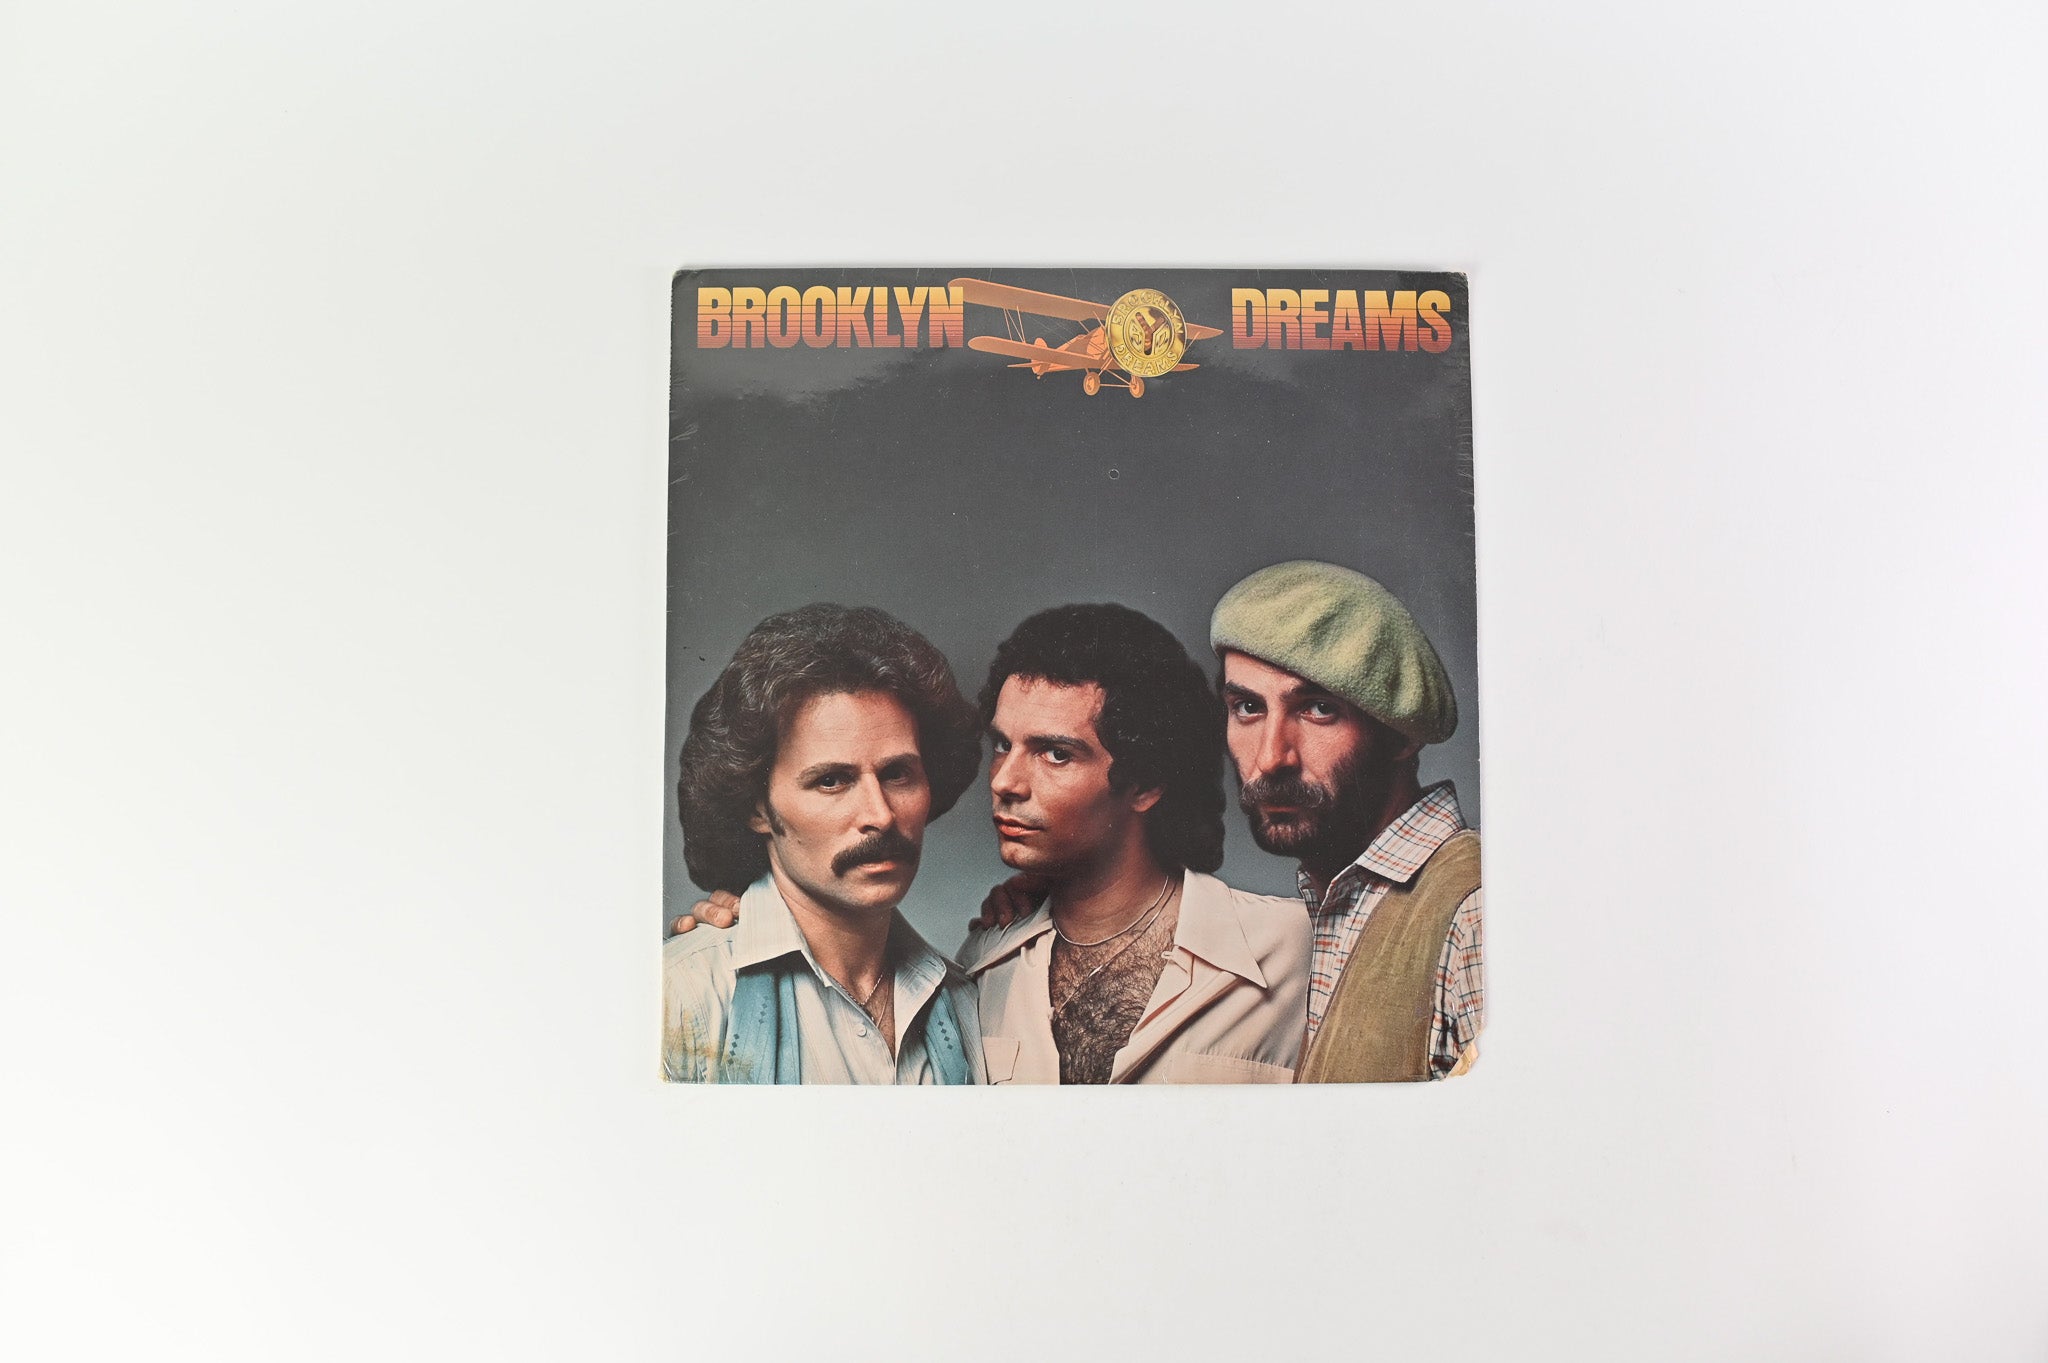 Brooklyn Dreams - Brooklyn Dreams on Millennium - Sealed